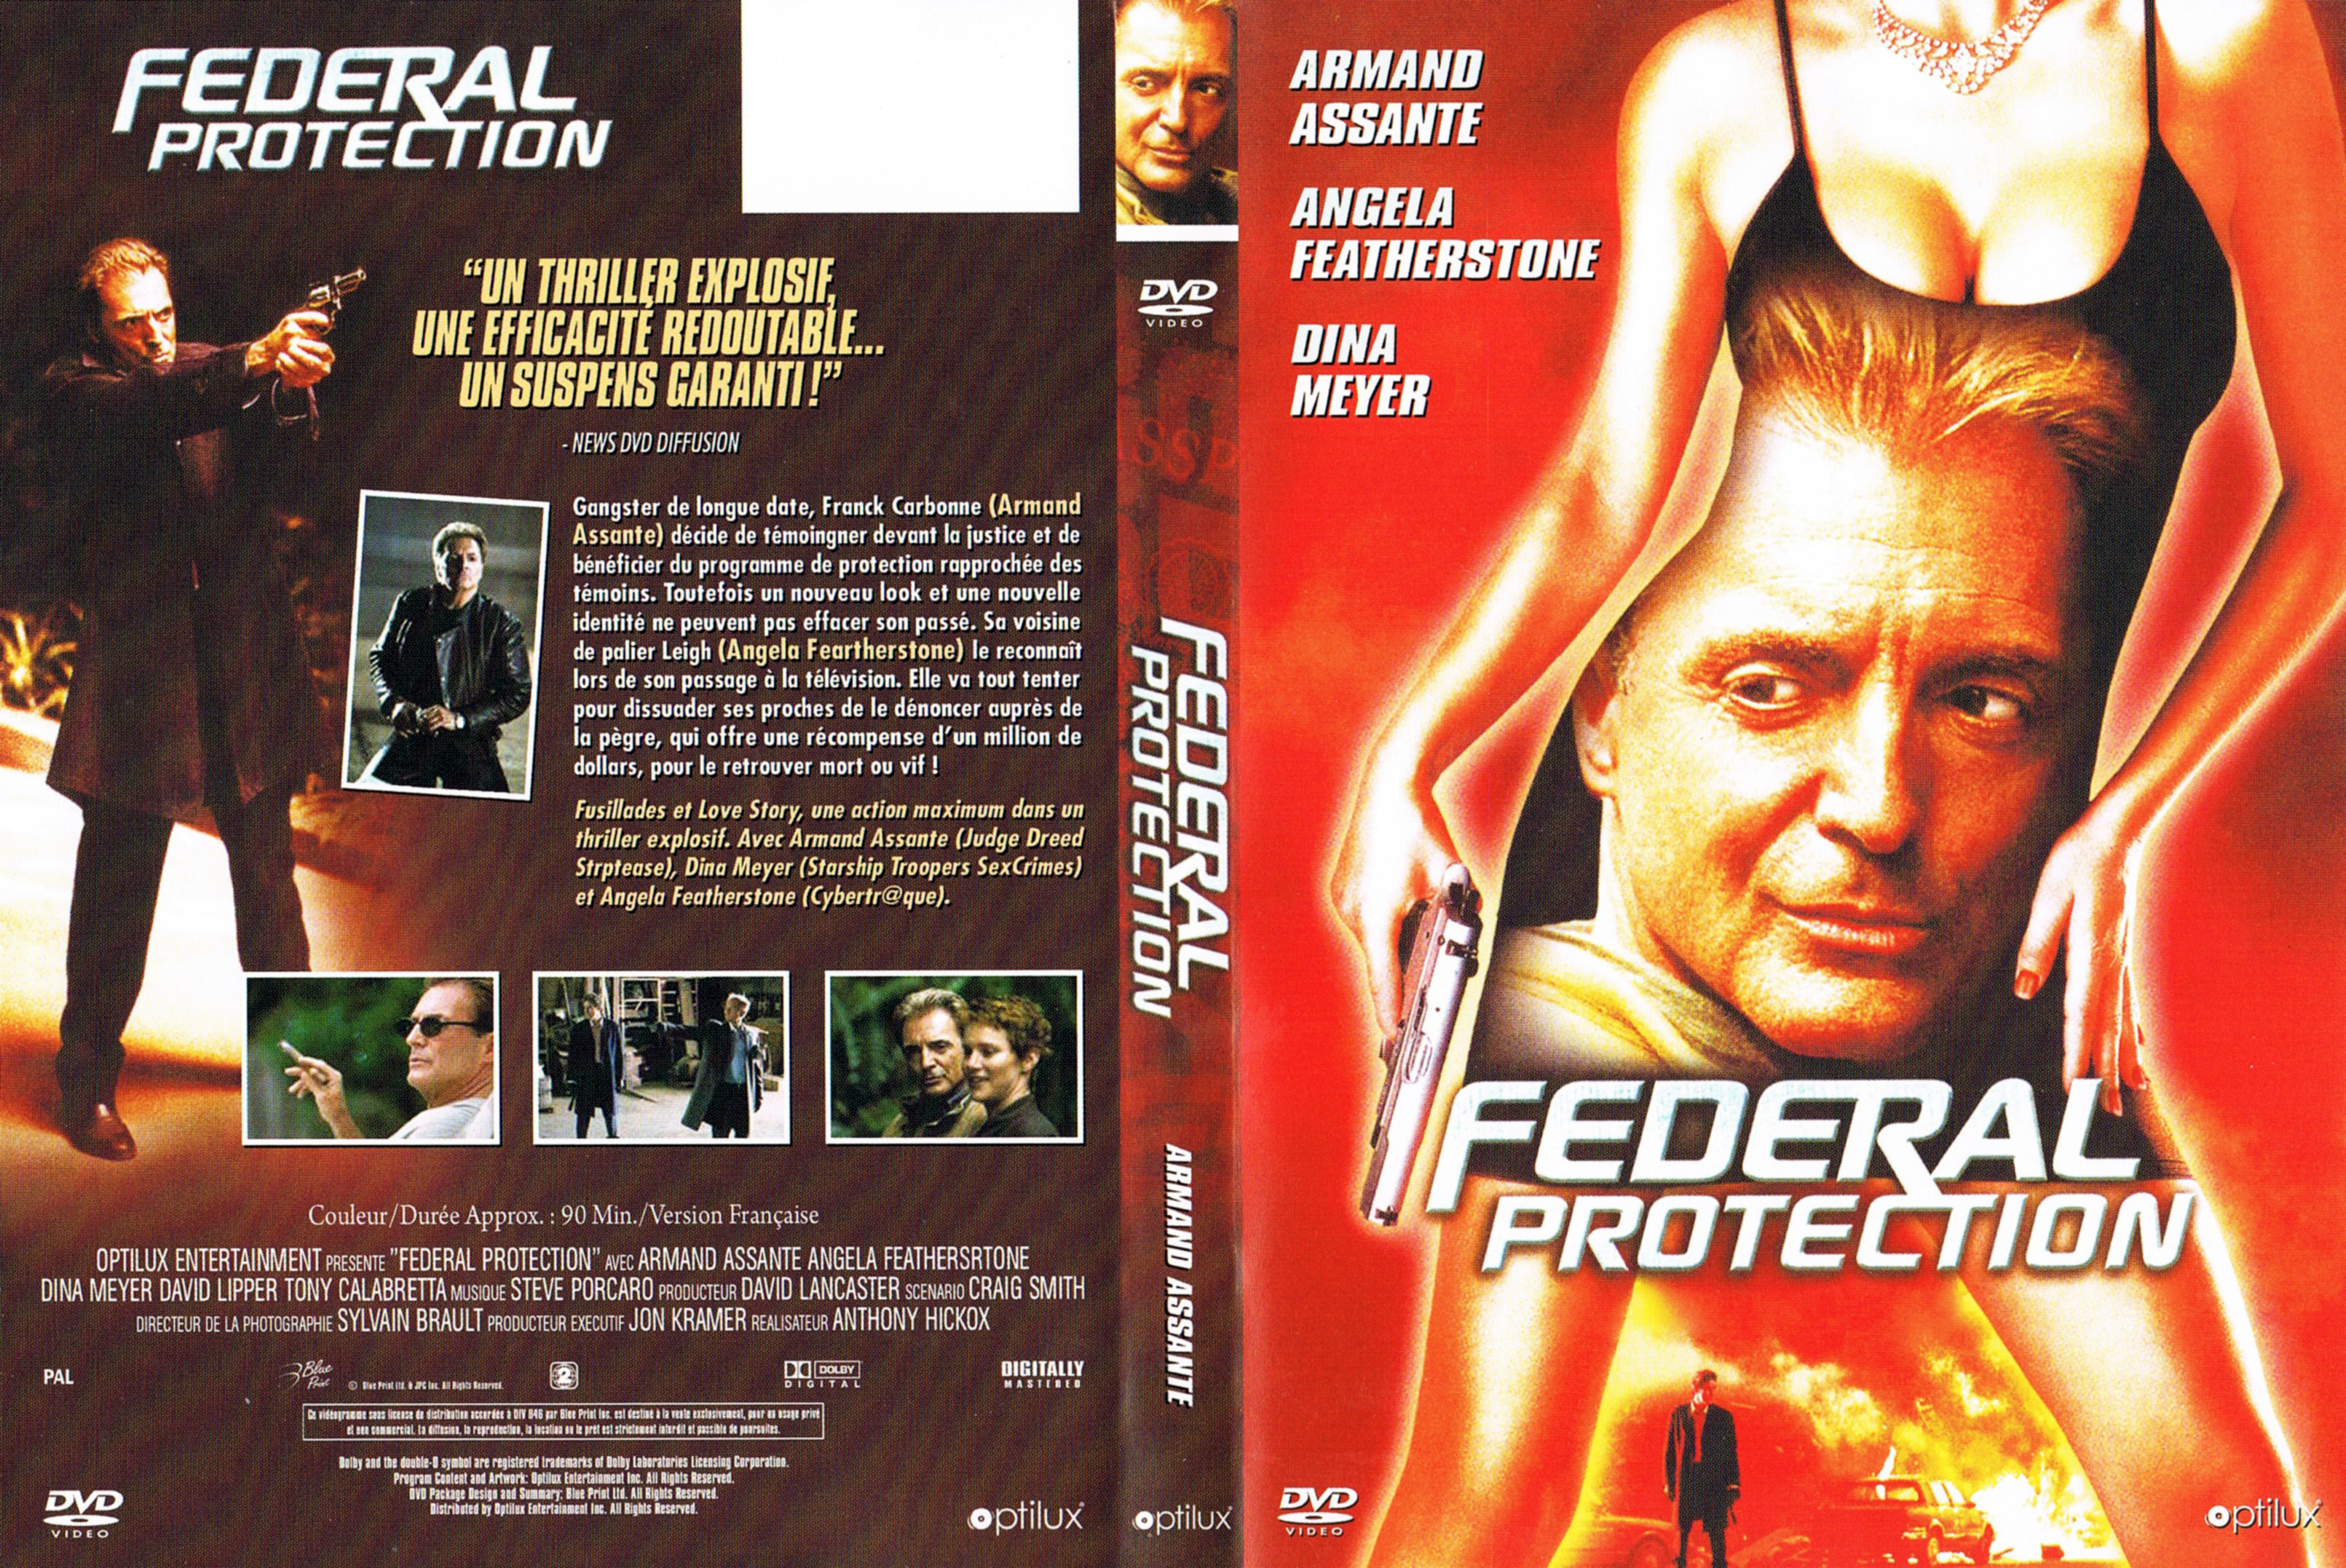 Jaquette Dvd De Federal Protection Cinéma Passion